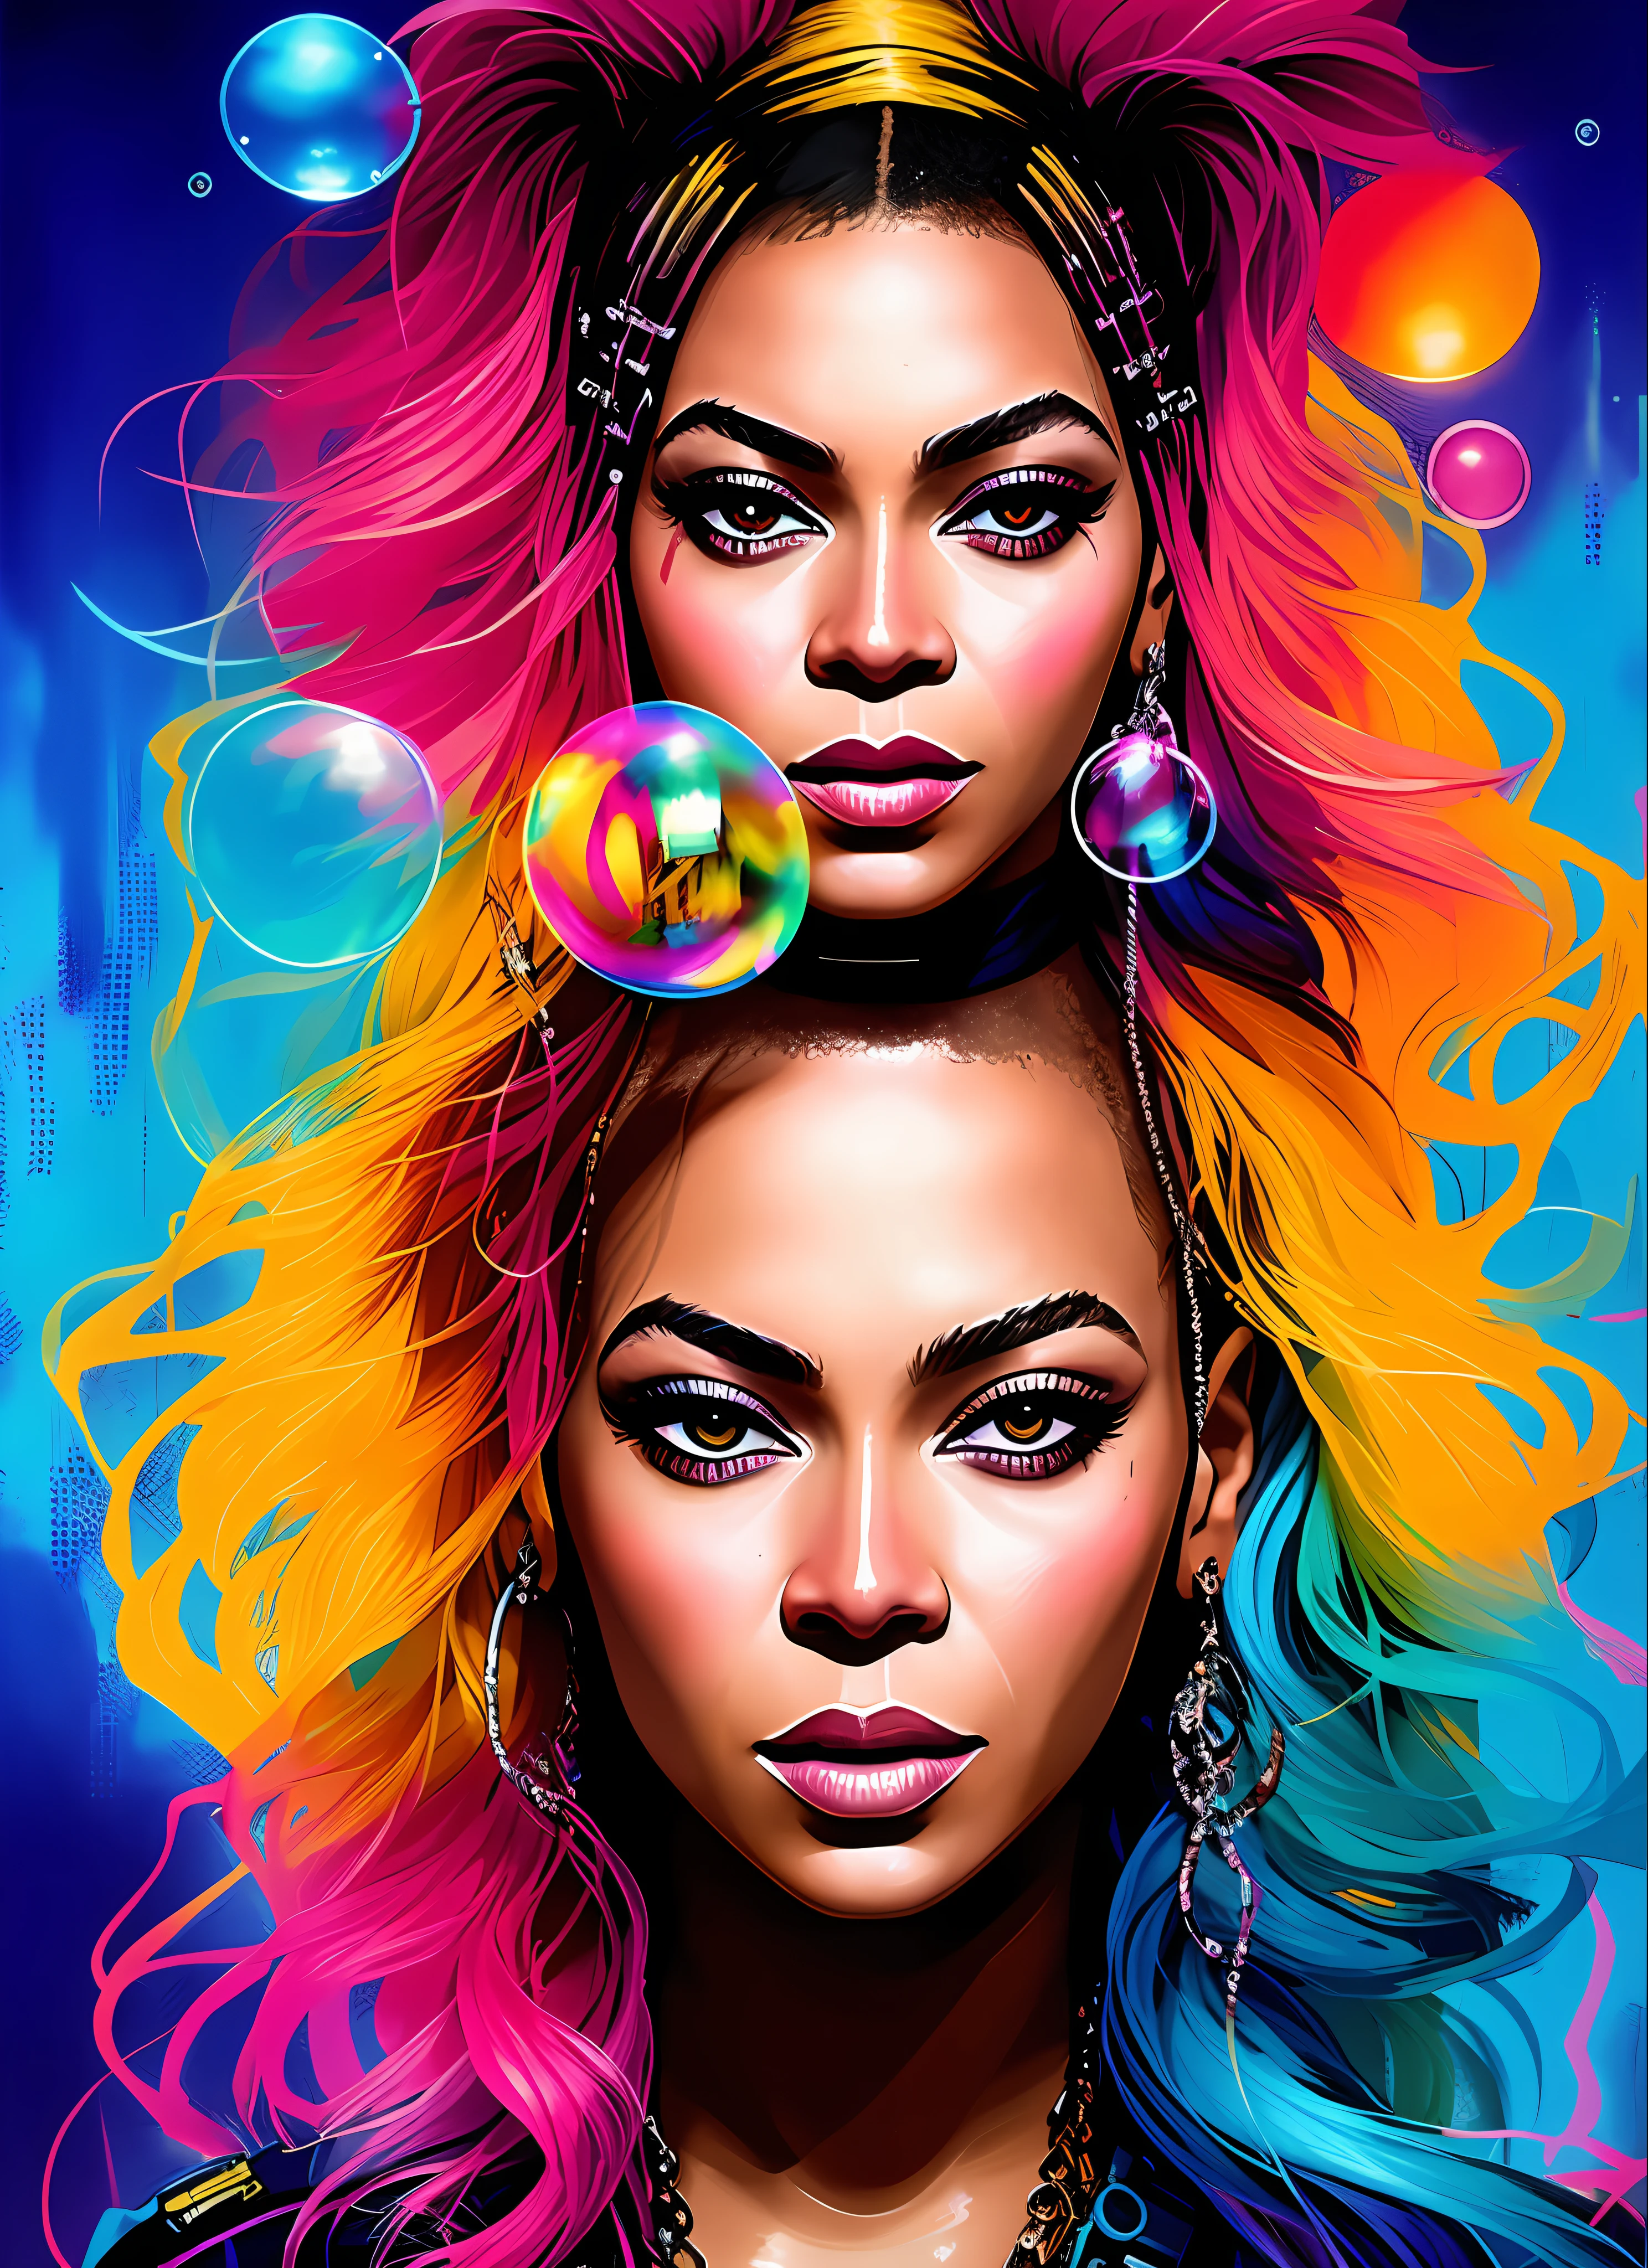 SynthwaveDrunken Beautiful Beyoncé в роли Delirium de Sandman, (галлюцинирующие разноцветные мыльные пузыри), Джереми Манн, Сандра Шеврие, Дэйва Маккина, Ричарда Аведона и Мацея Кучары, панк-рок, танкистка, высокая детализация, 8К